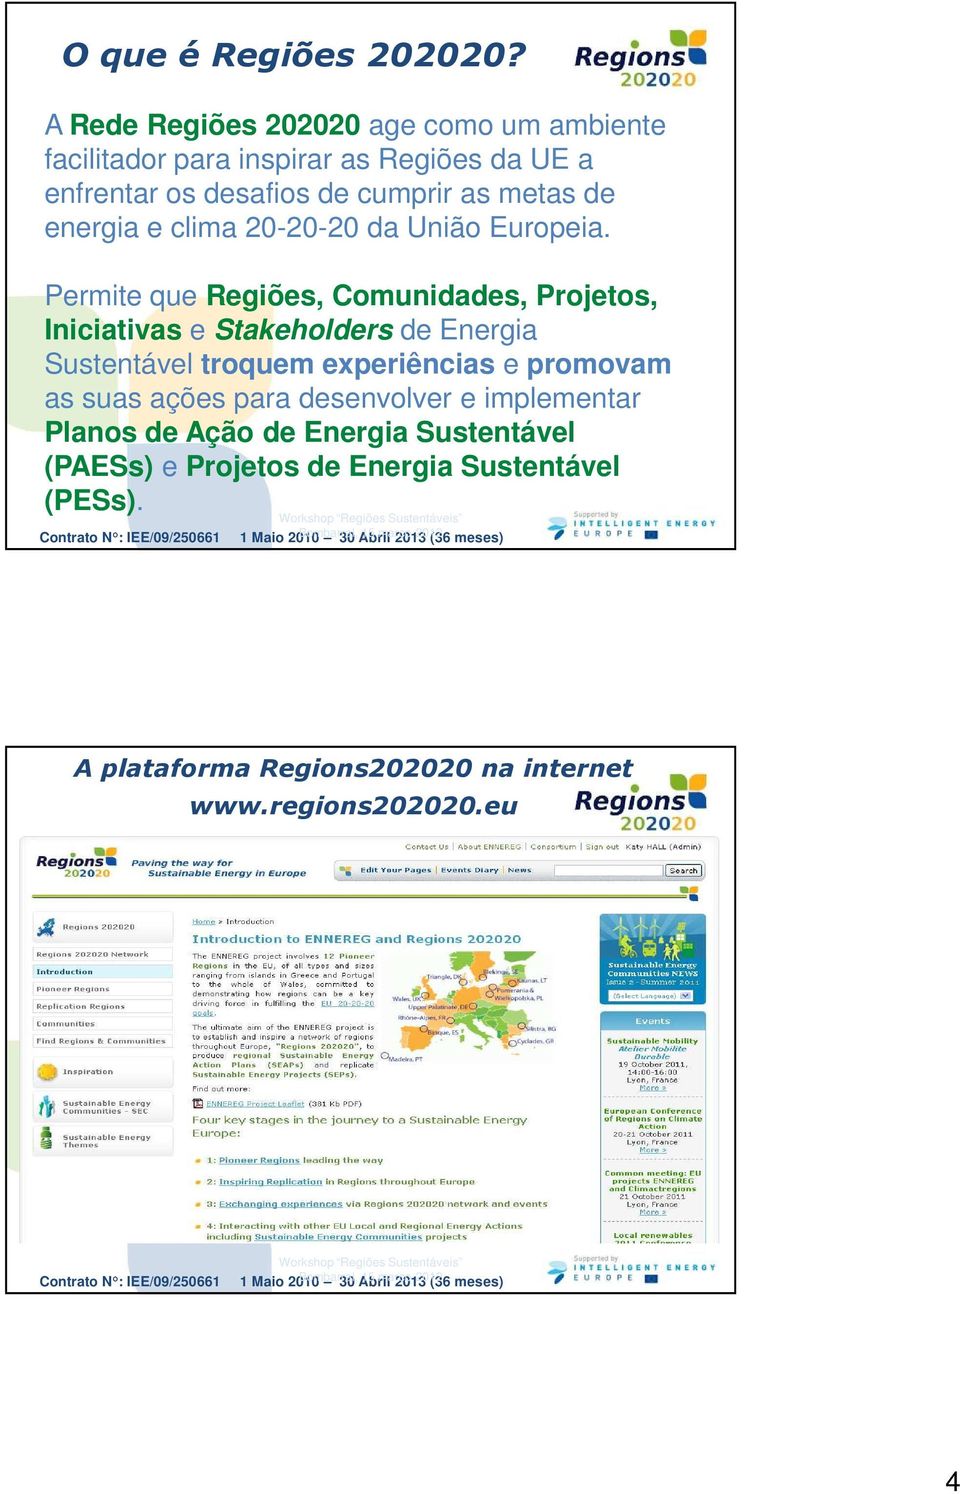 de energia e clima 20-20-20 da União Europeia.